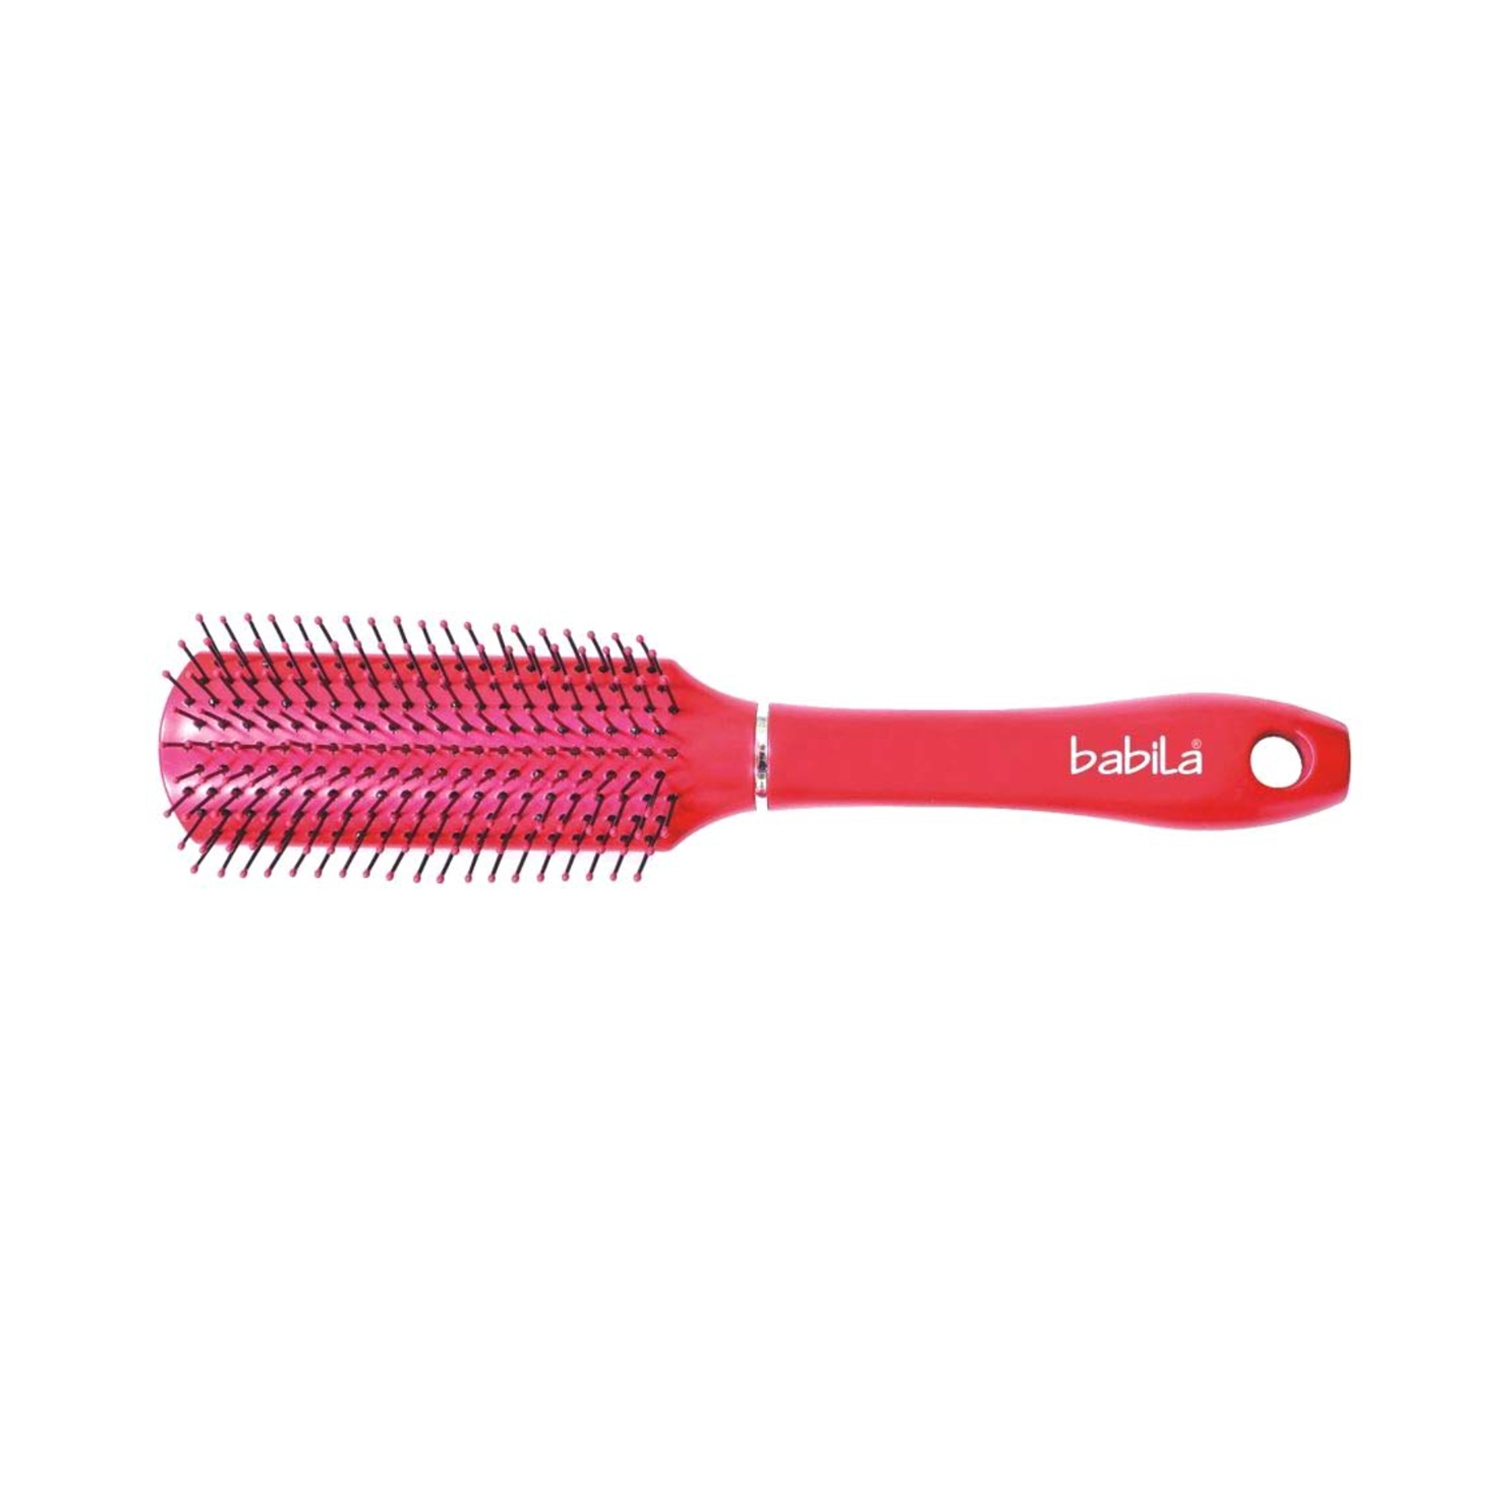 Babila Flat Hair Brush HB-V540